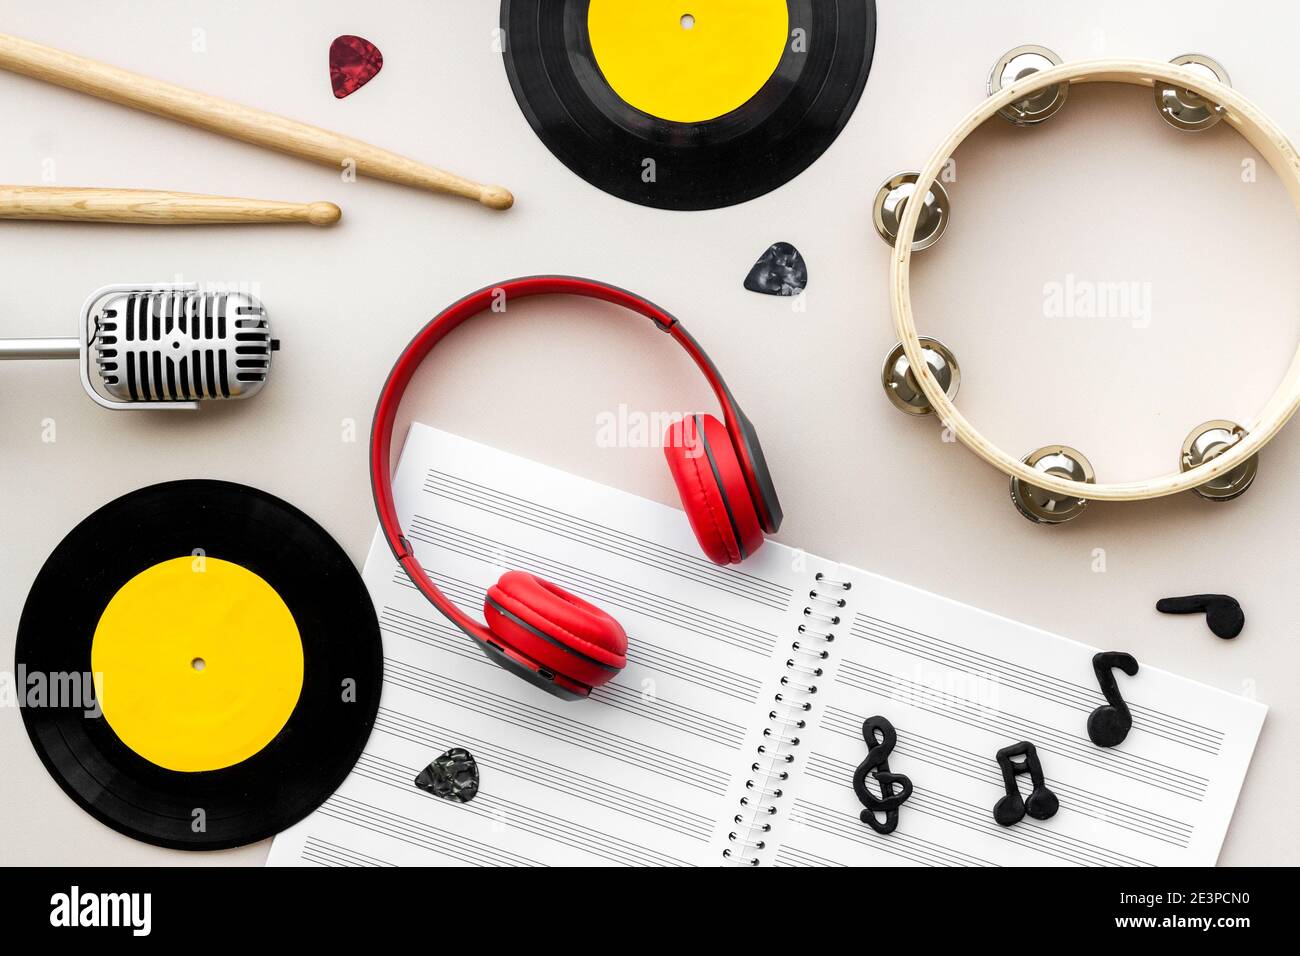 Lit de musique - instruments avec disques en vinyle, vue de dessus Photo  Stock - Alamy